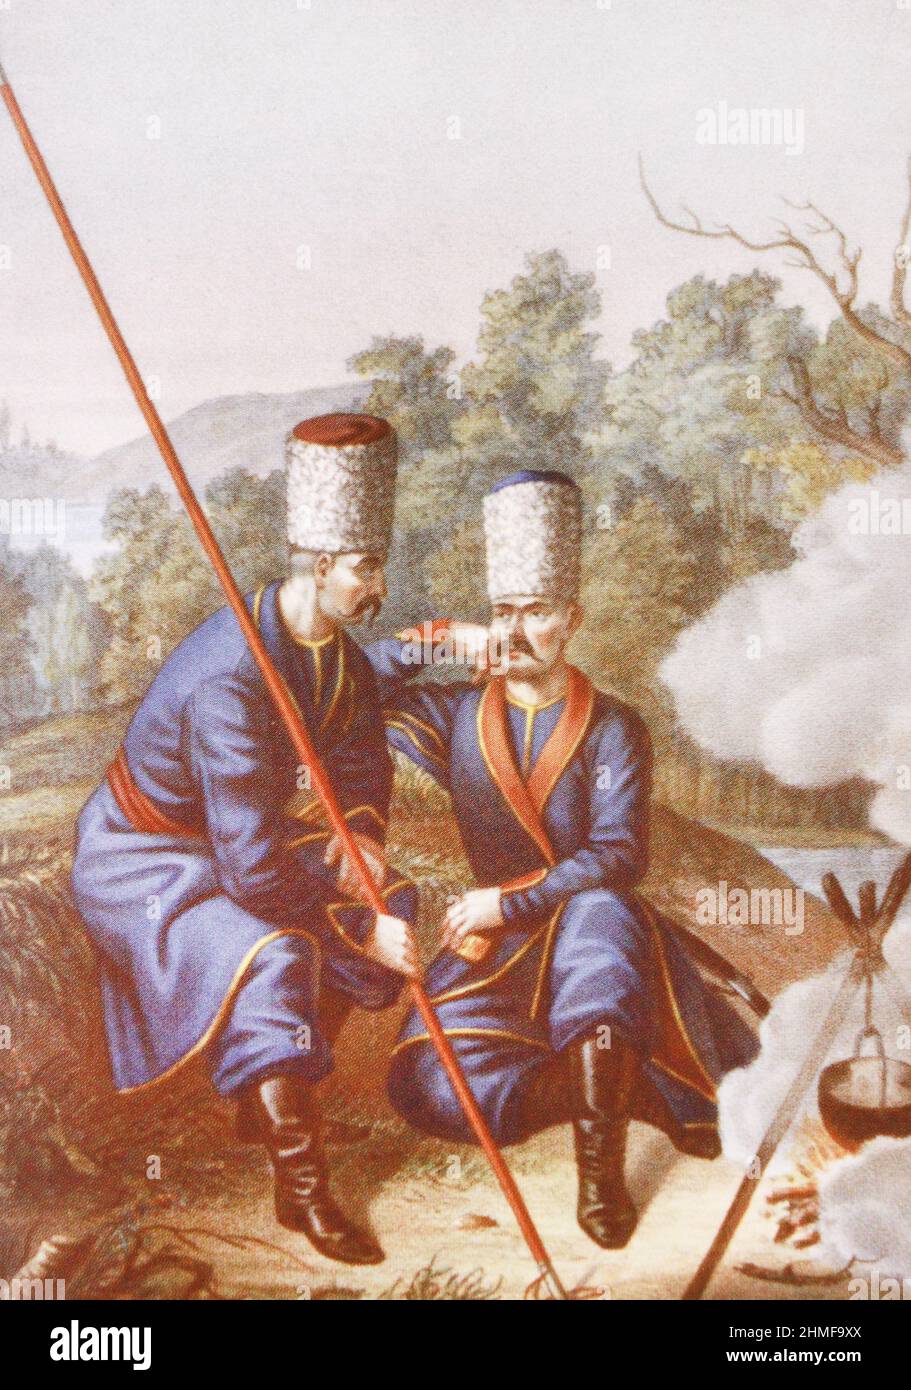 Yaitsky and Orenburg Cossacks. Engraving from 1774. Stock Photo